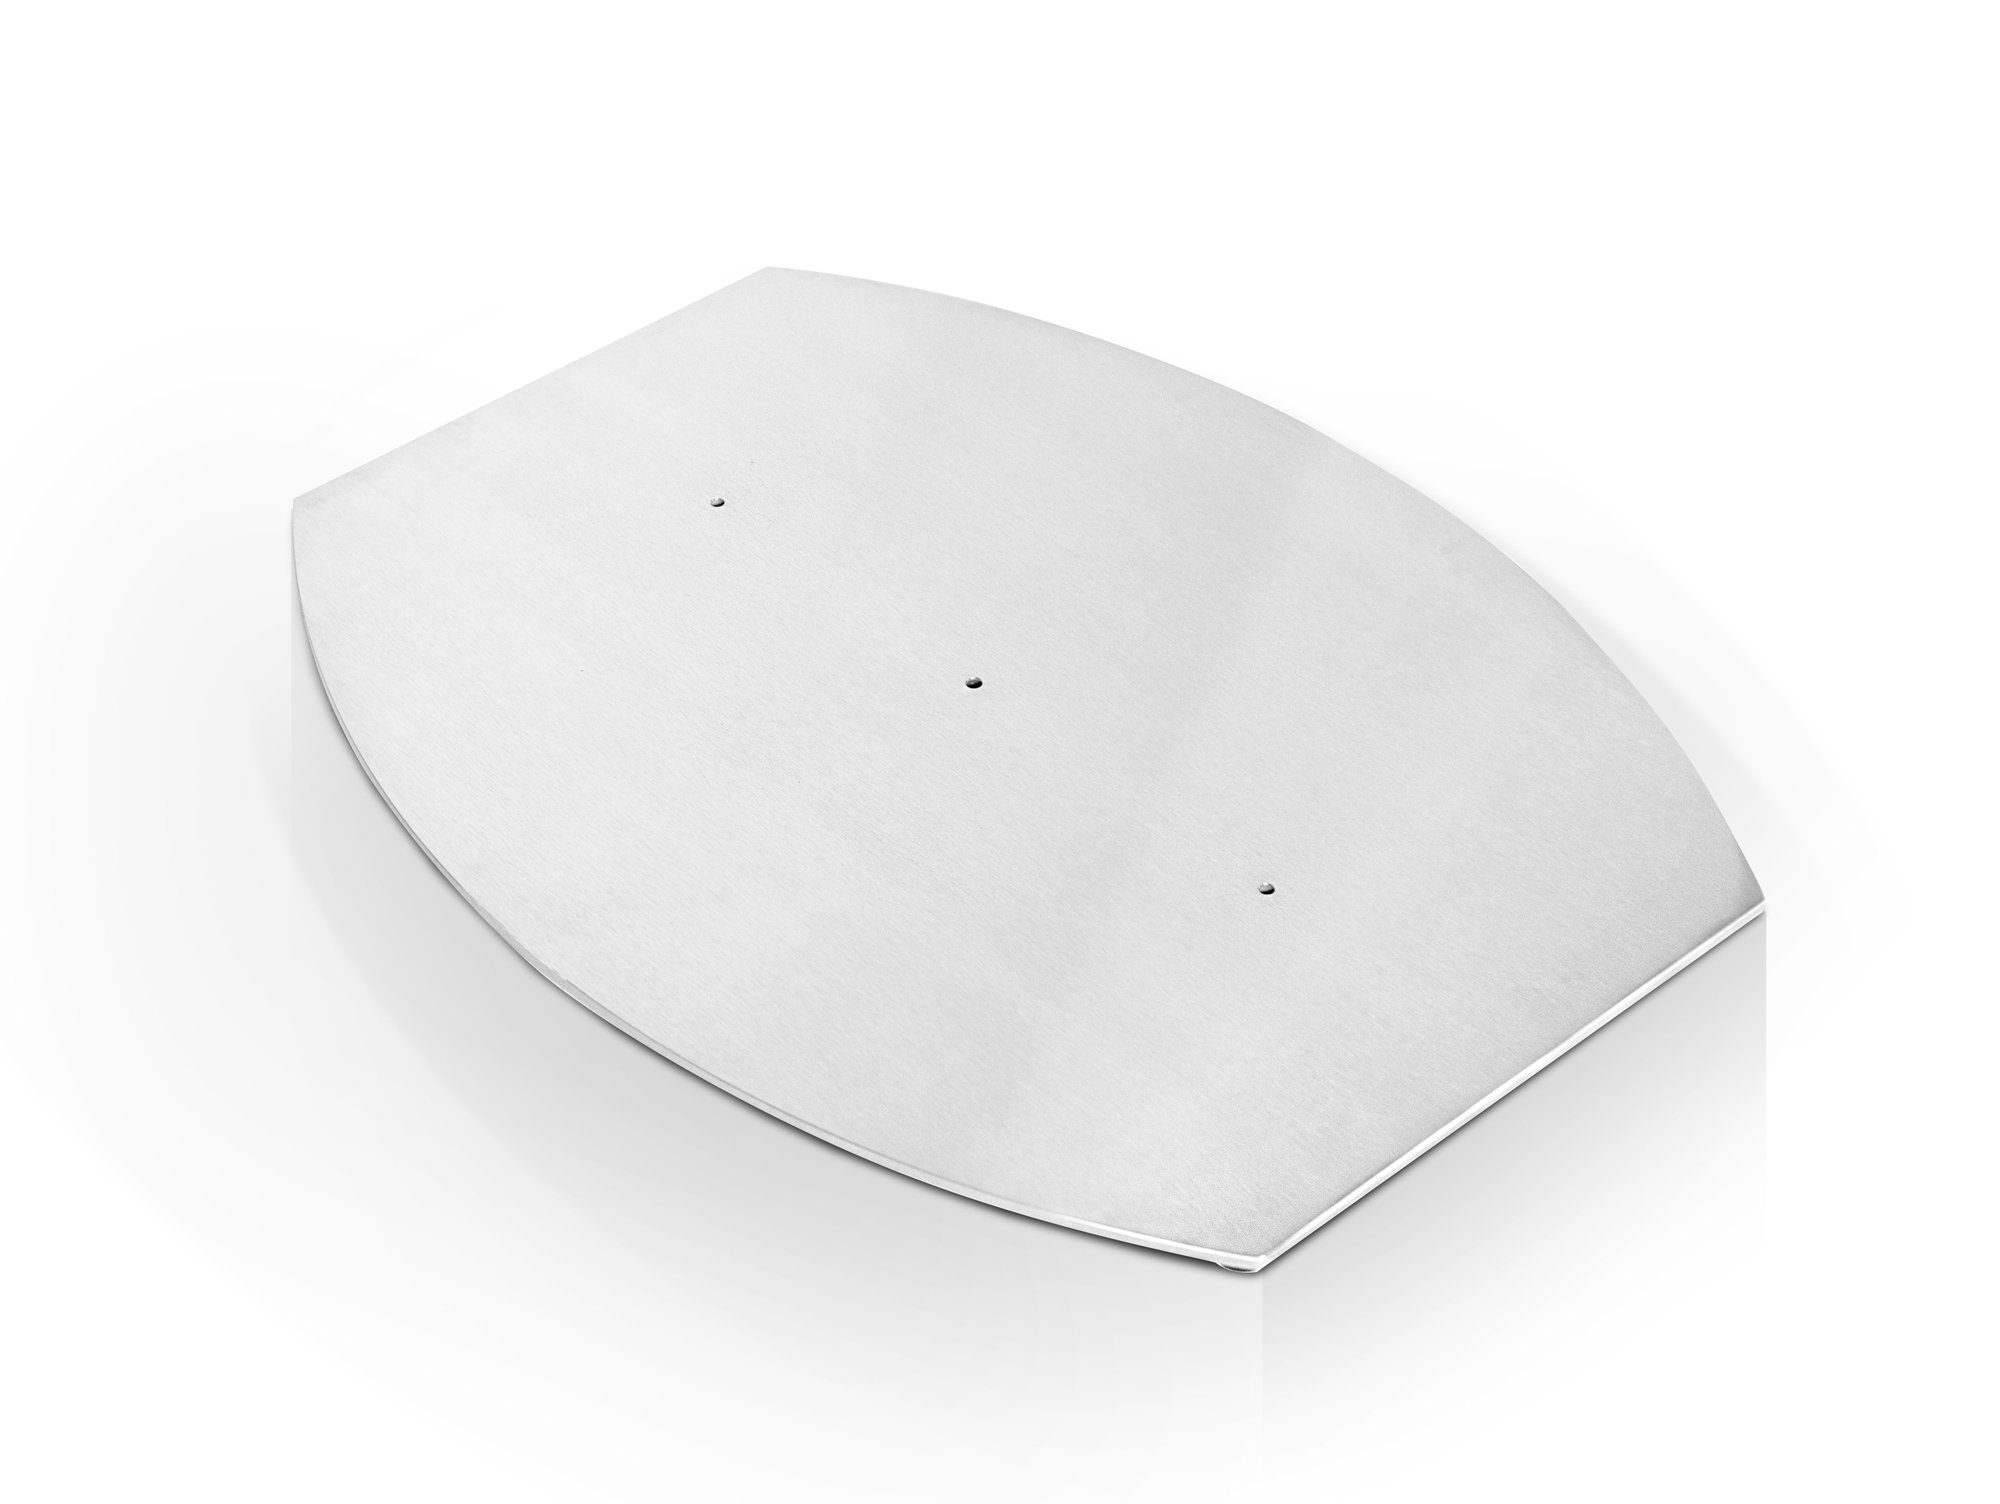 Moebel-Eins Tischgestell Bodenplatte bootsform, Bodenplatte Material Silber Edelstahl bootsform, Edelstahl, Material